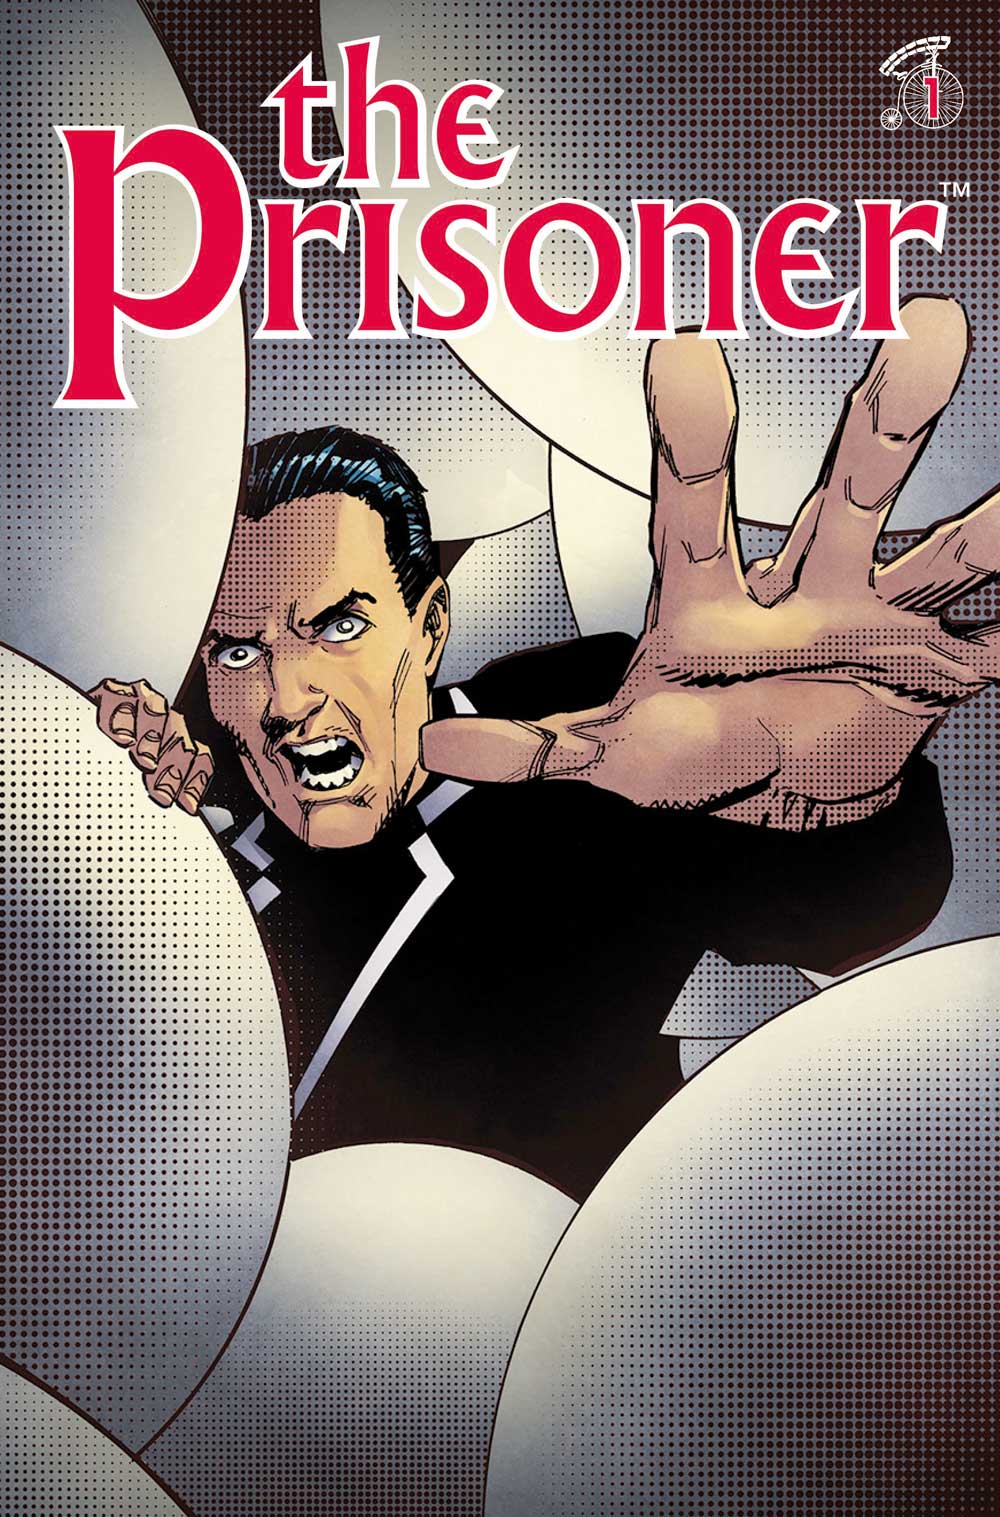 The Prisoner Issue 1 Cover E John McCrea.jpg